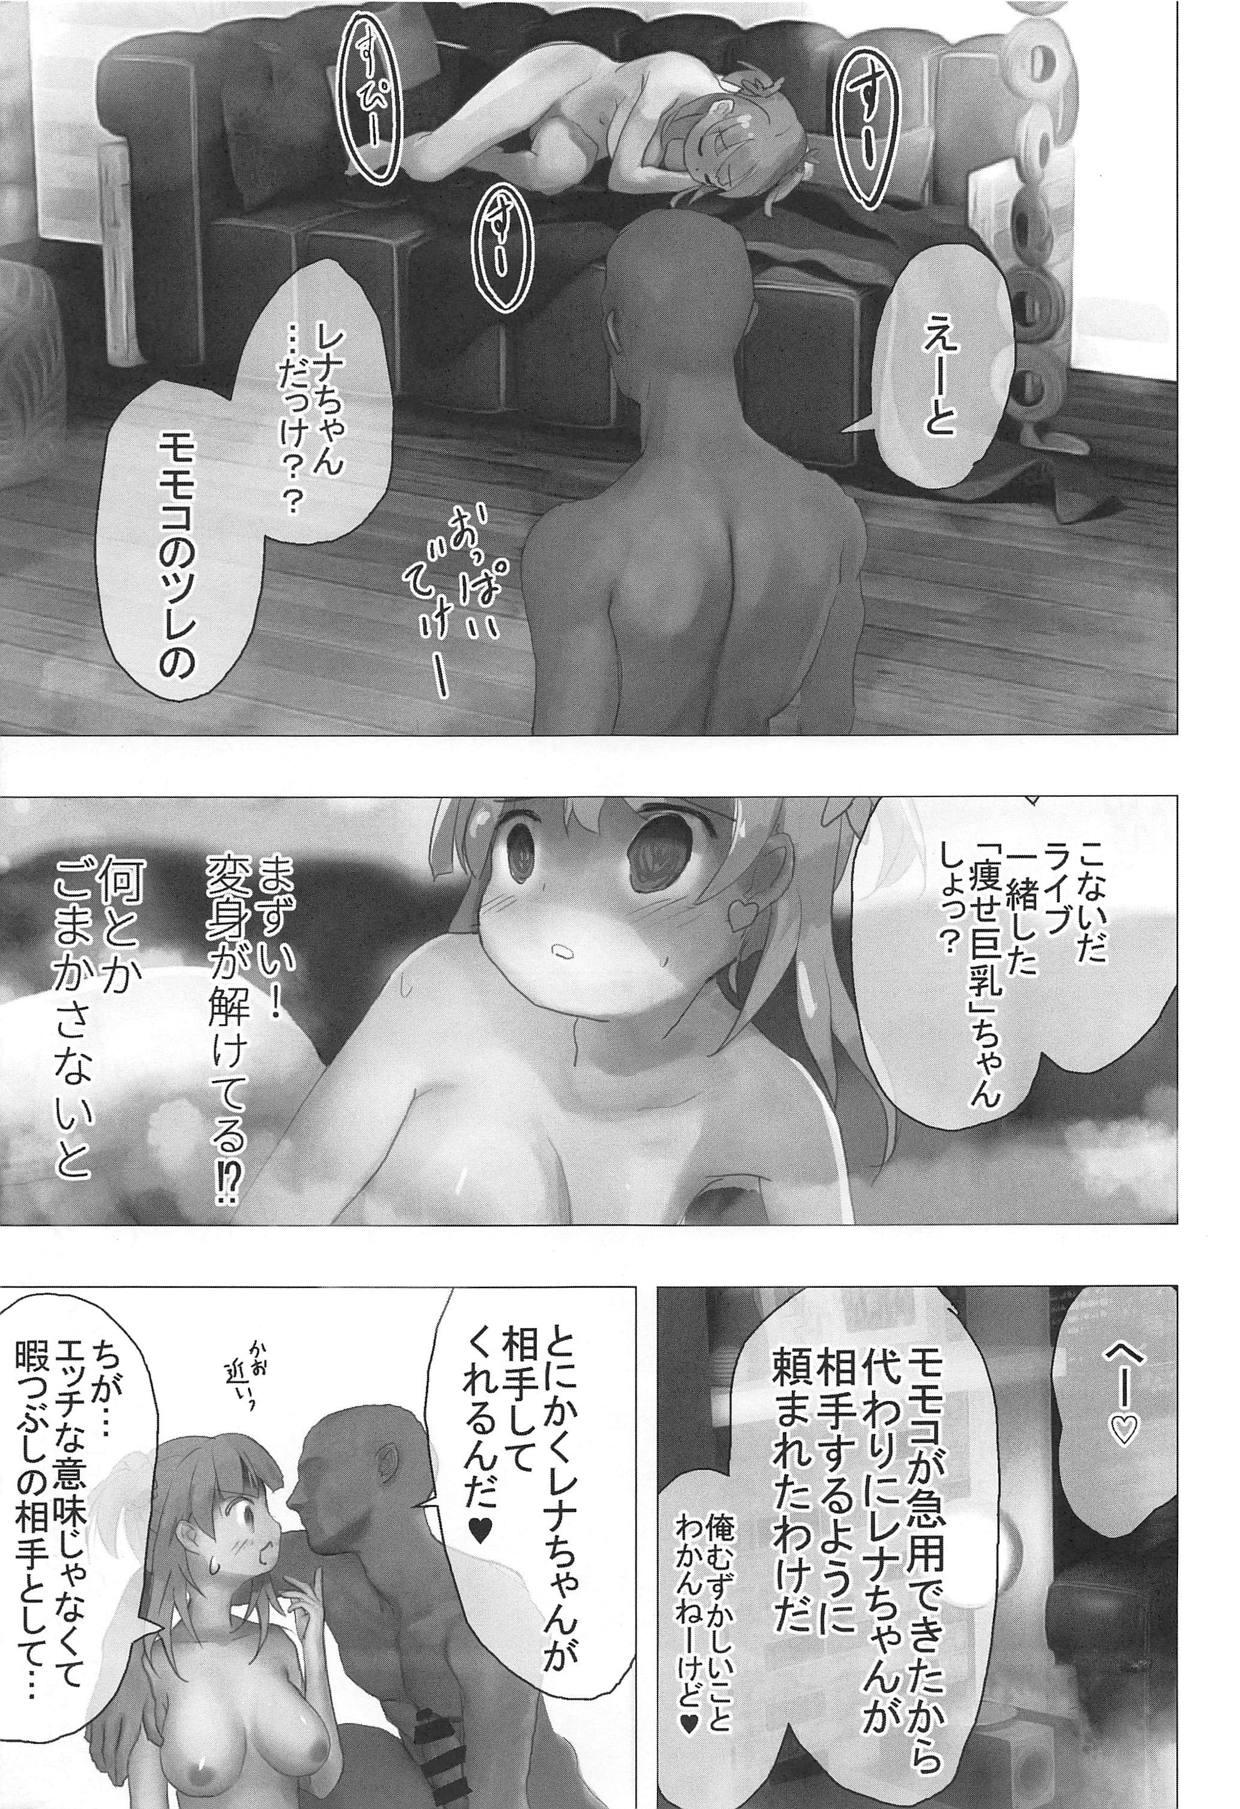 Pack Momoko no Kareshi nante Rena Mitomenainda kara! - Puella magi madoka magica side story magia record Amature Sex Tapes - Page 8